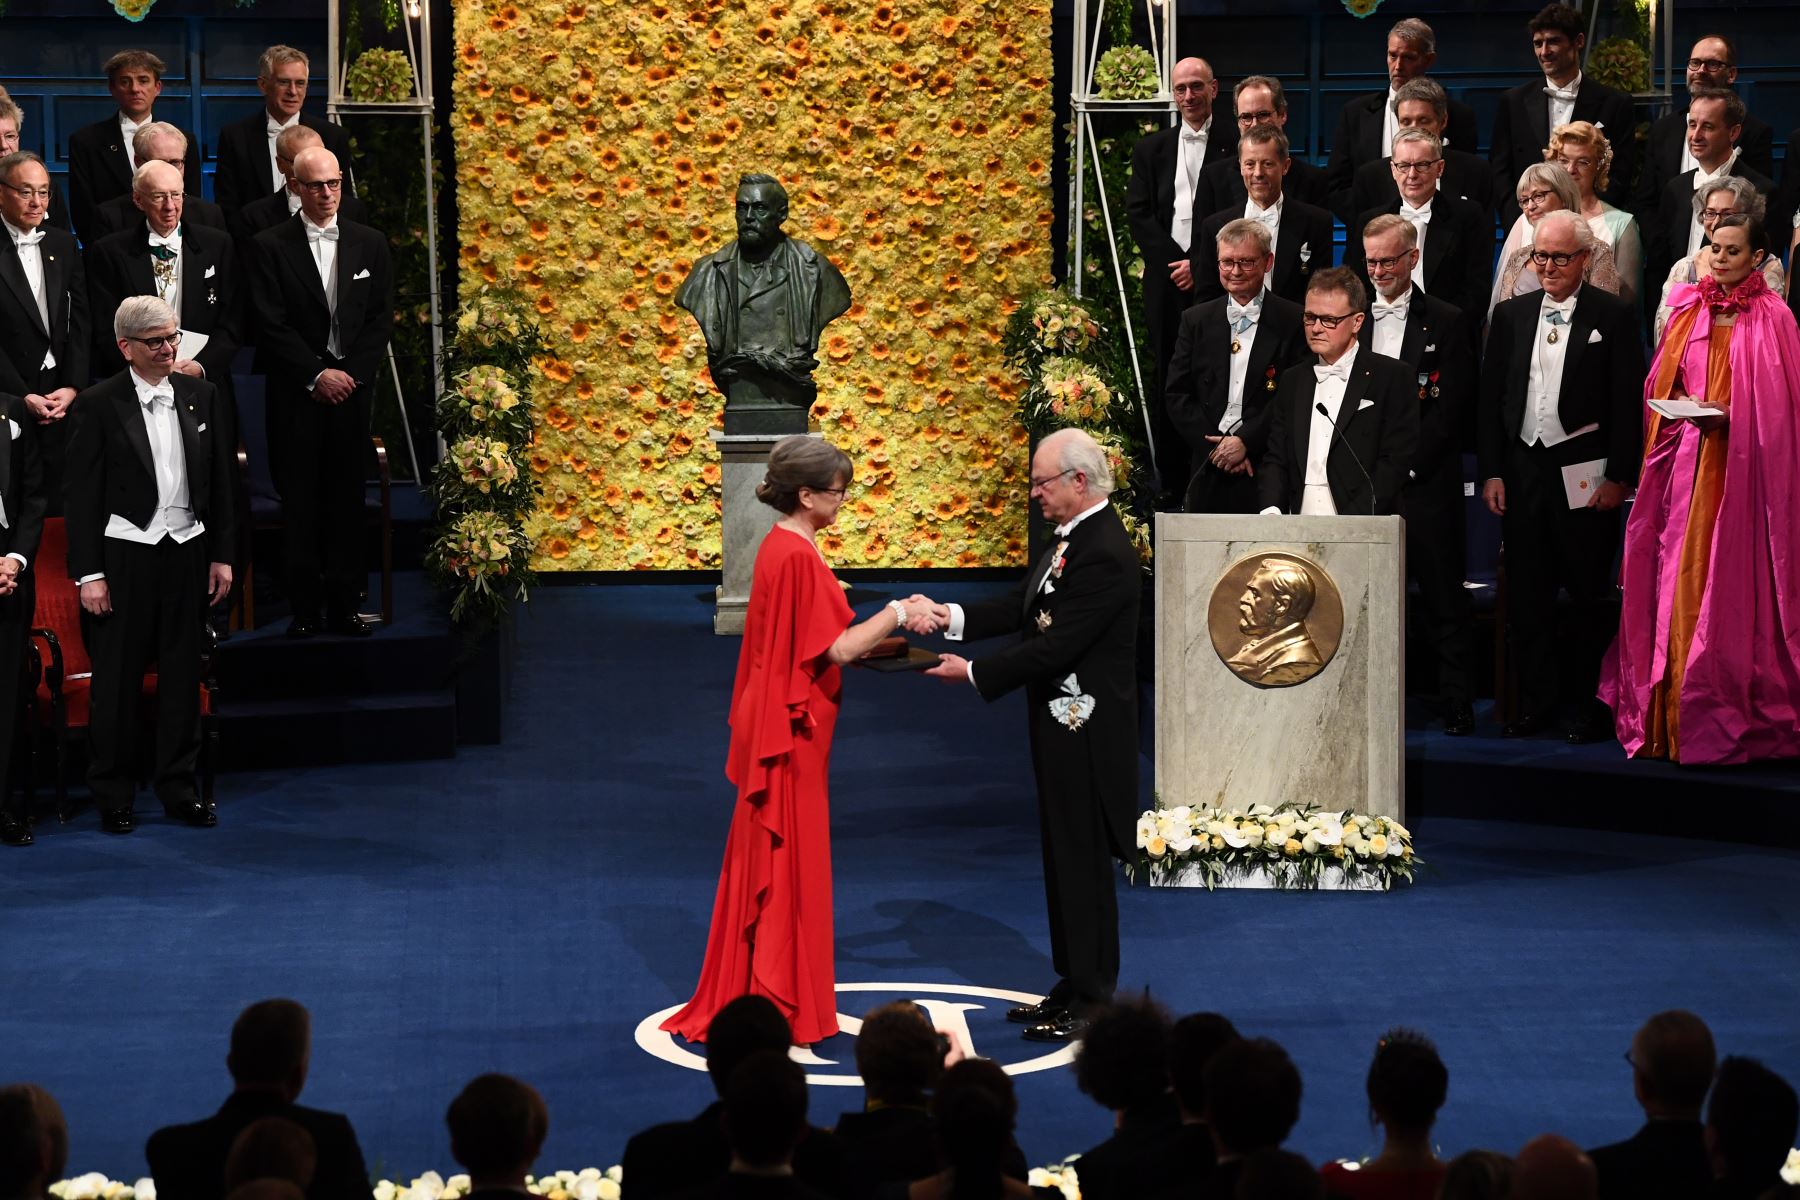 Co-galardonada con el Premio Nobel de Física en Física 2018, la física canadiense Donna Strickland recibe su Premio Nobel del Rey Carl XVI Gustaf de Suecia (R) durante la ceremonia de entrega de Premios 2018 el 10 de diciembre de 2018 en la Sala de Conciertos de Estocolmo, Suecia. AFP